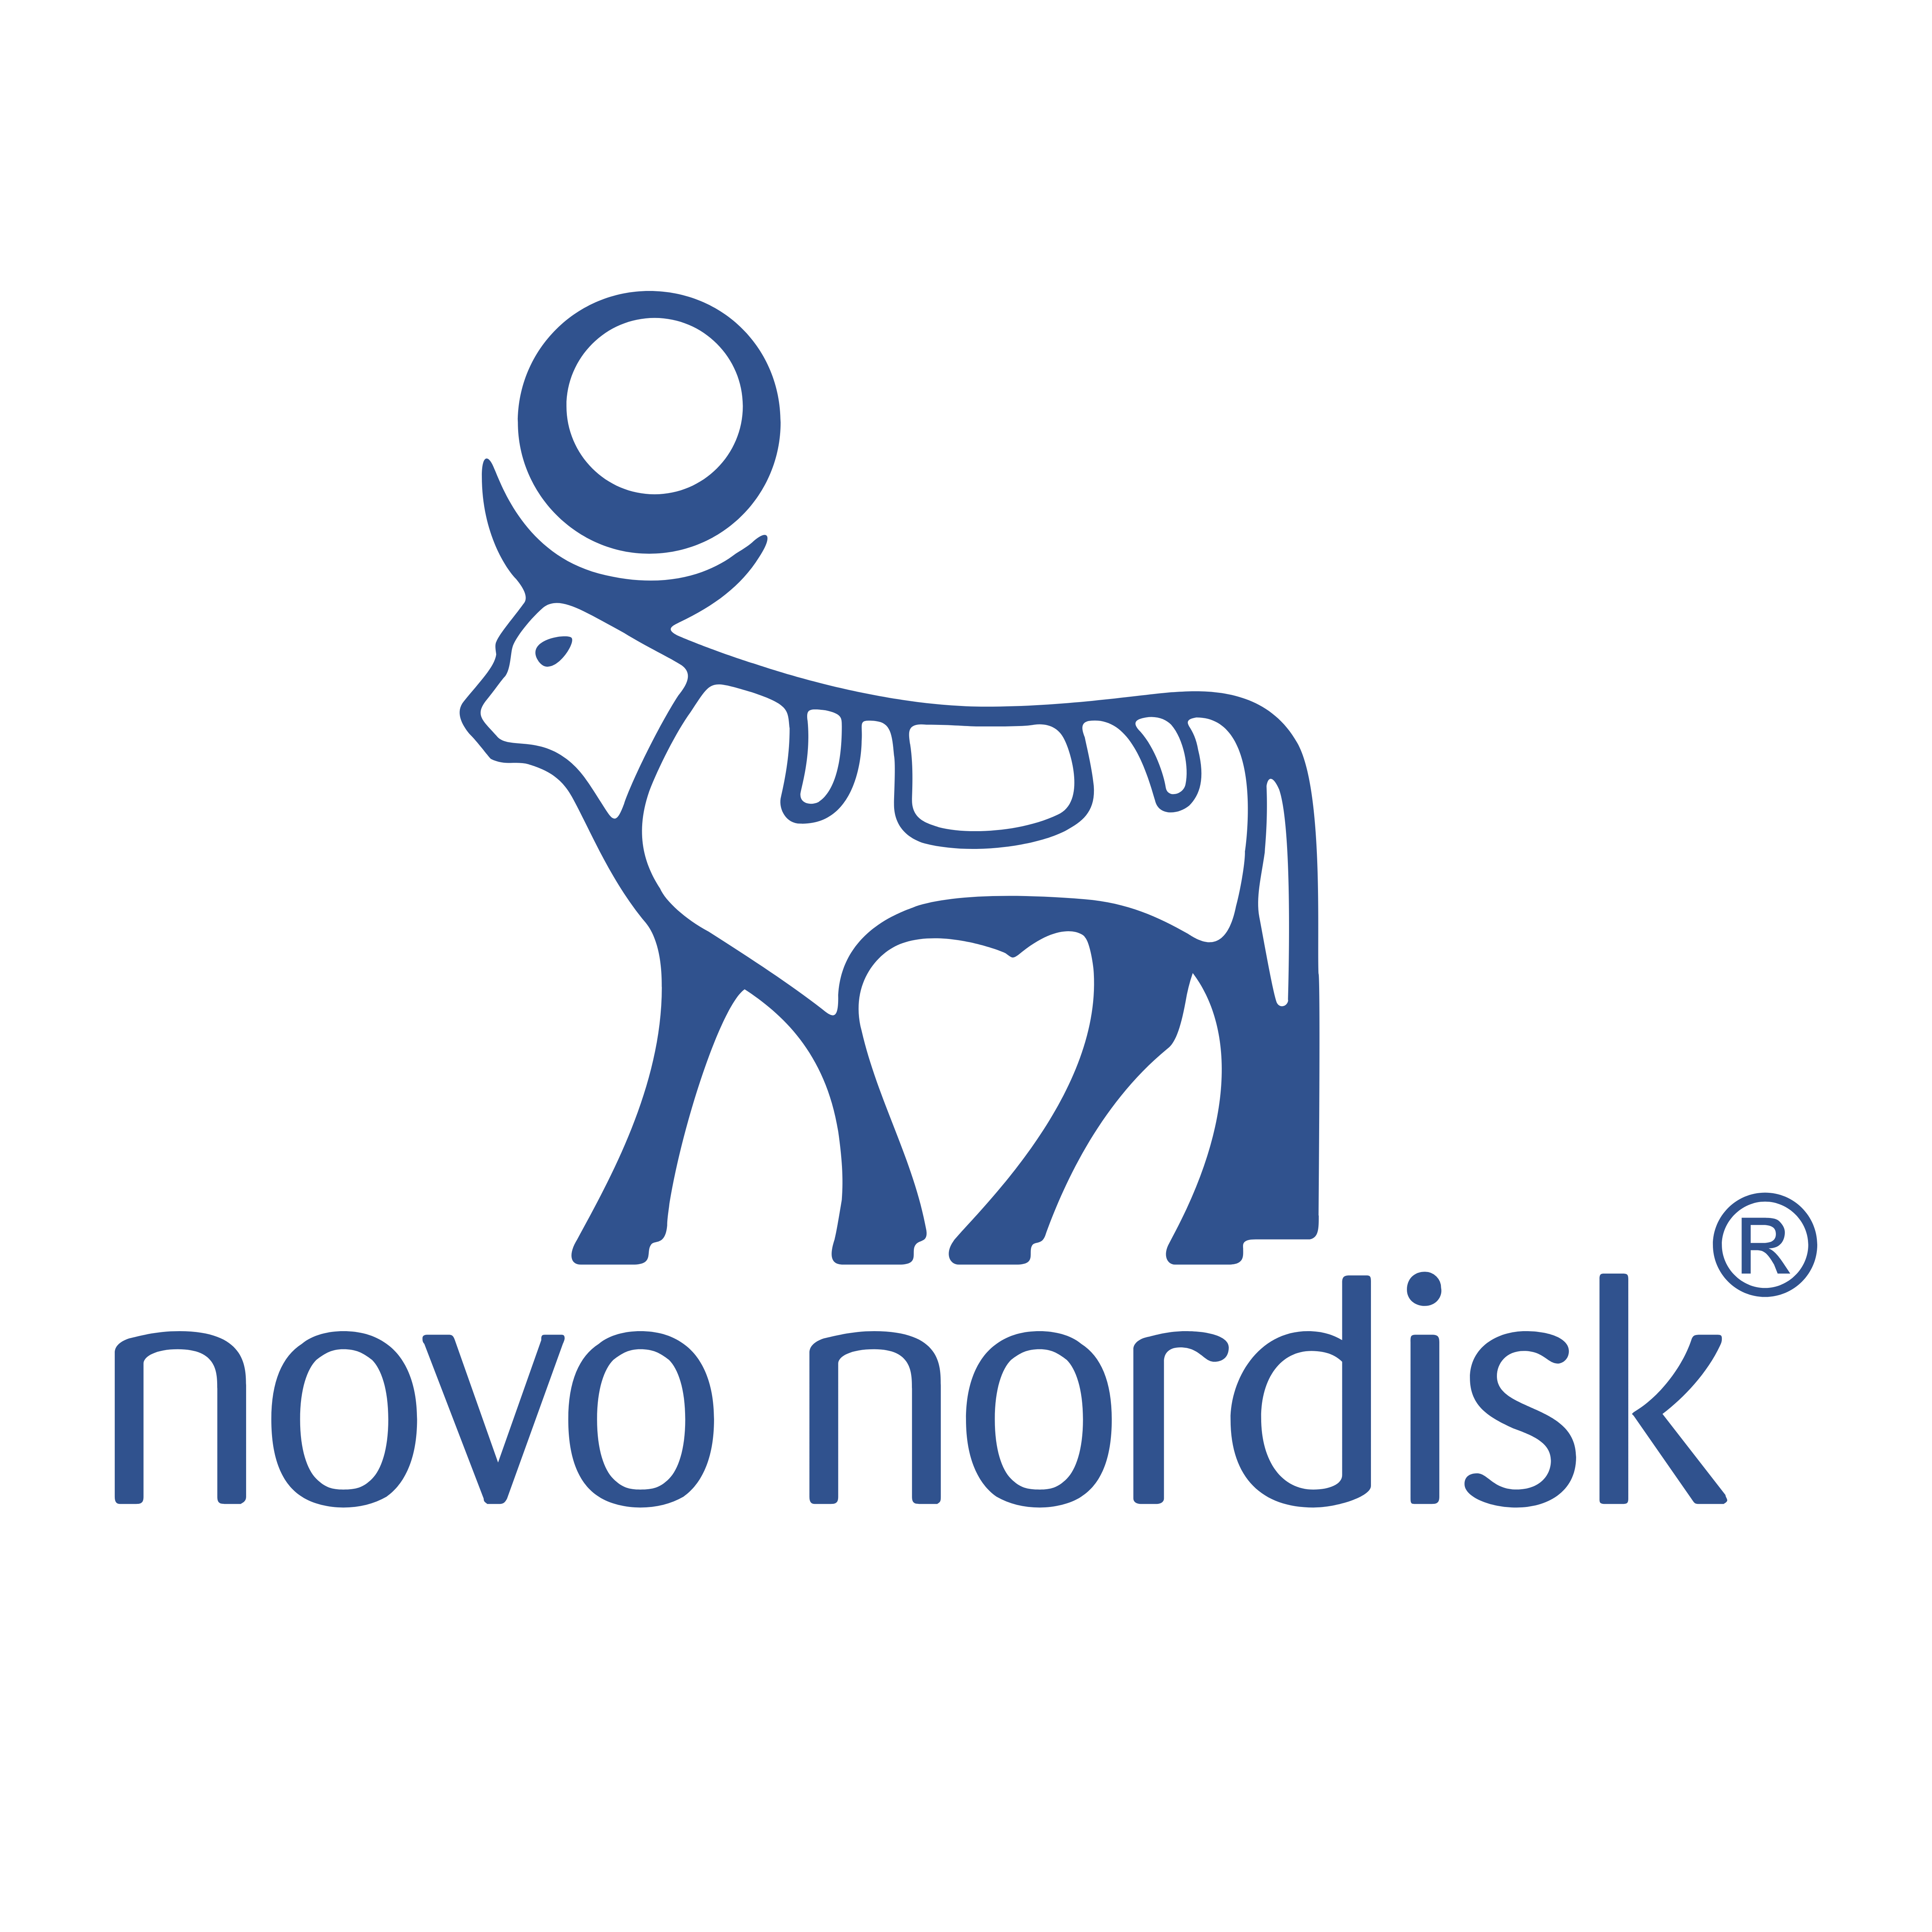 Big-Call-Depotupdate: Pharmamulti überzeugt mit starker Price-Action nach solidem Zahlenwerk - Novo Nordisk auf dem Sprung zu neuen Allzeithochs!